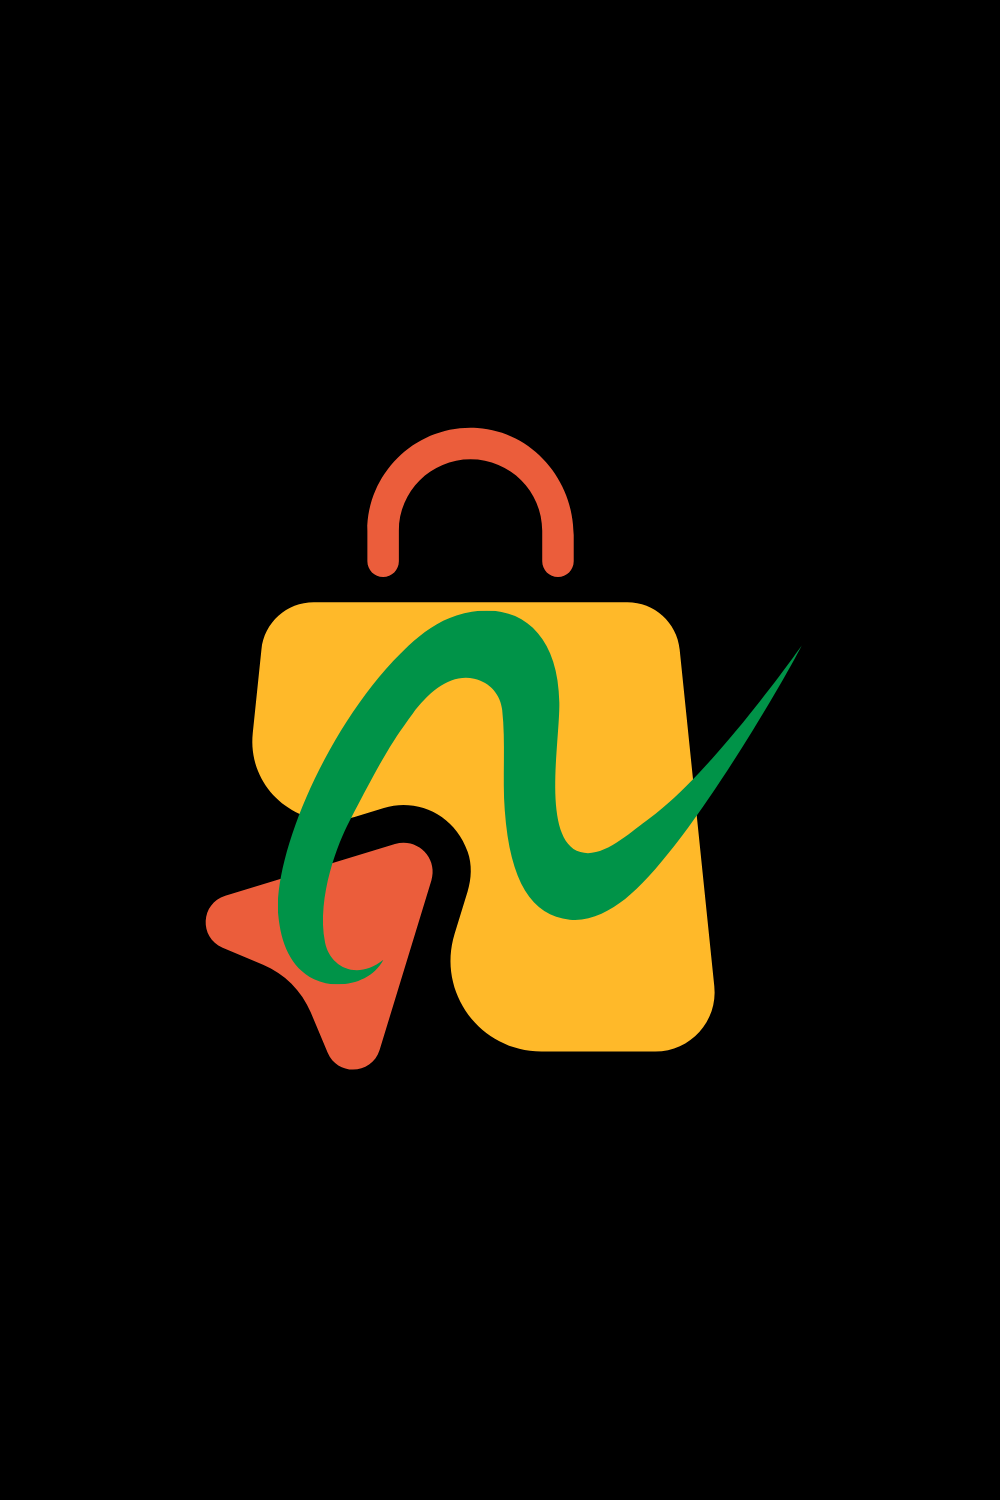 green company name financial services logo 19 847